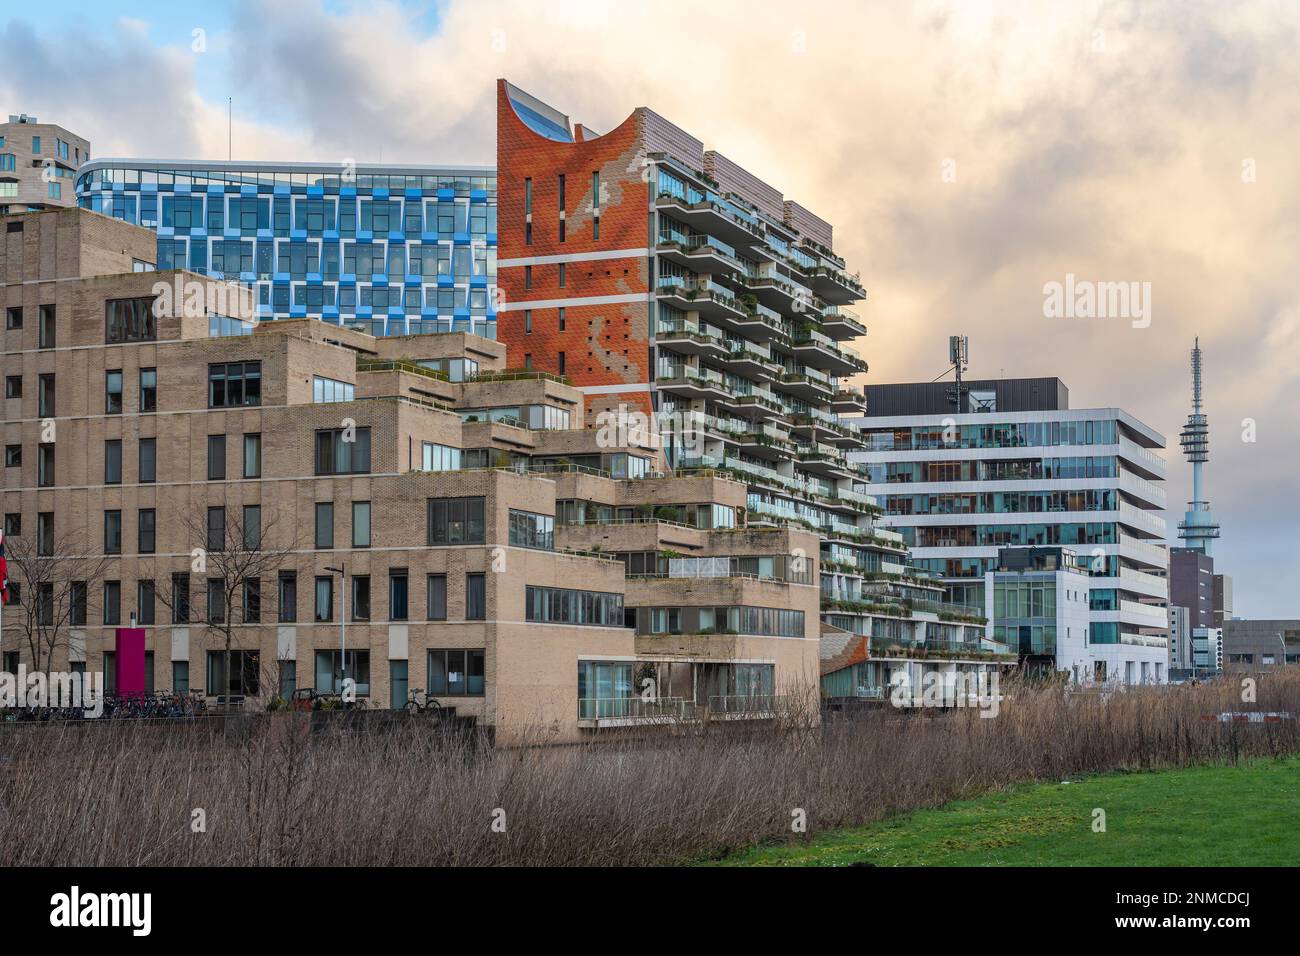 Stadtbild von Amsterdam Zuidas, neues, schnell entwickeltes Geschäftsviertel mit vielen Beispielen moderner, futuristischer Architektur Stockfoto